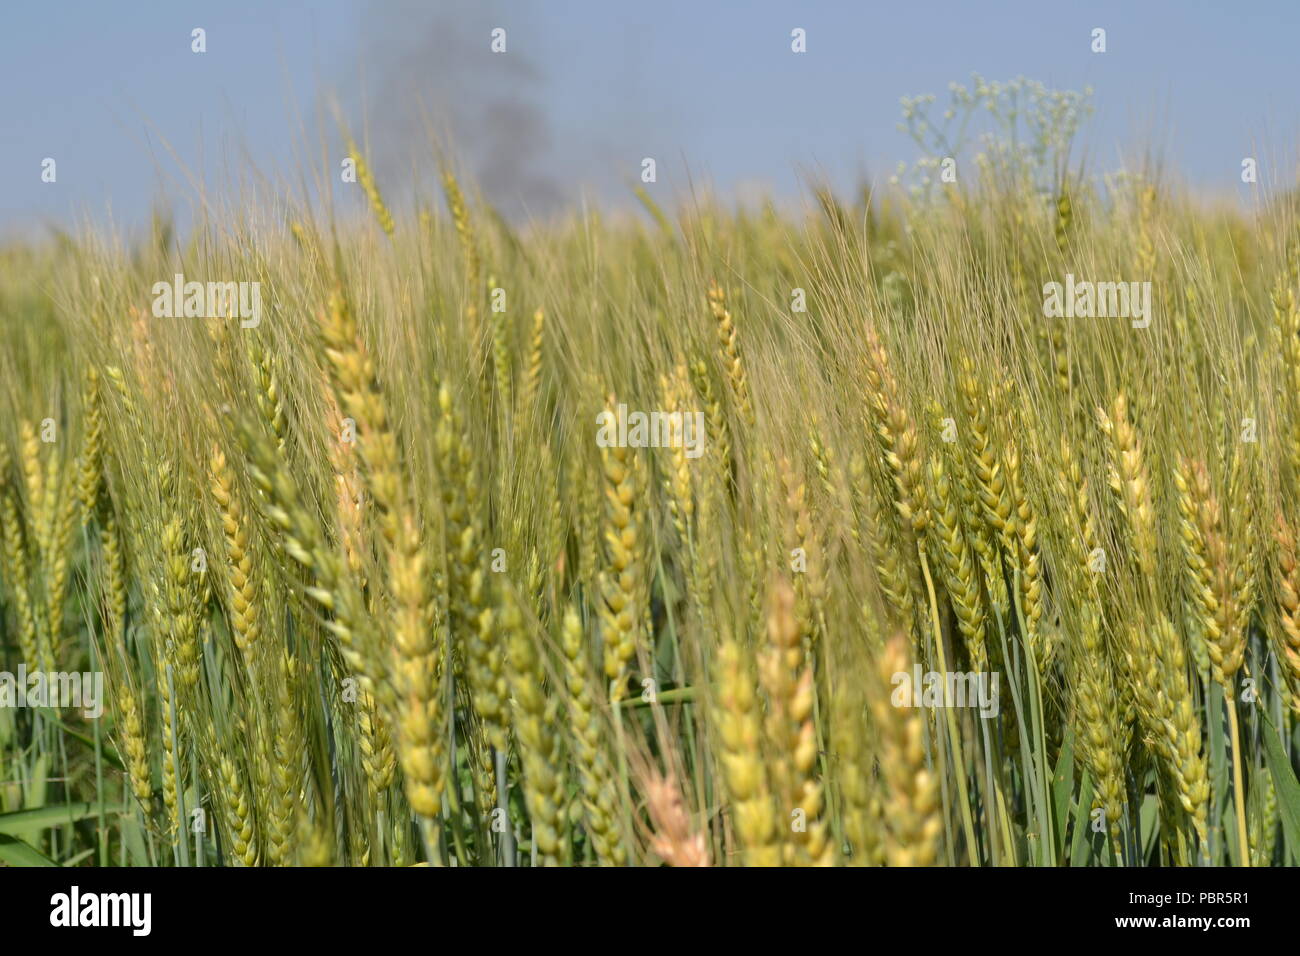 Los cultivos de trigo en la india Foto de stock